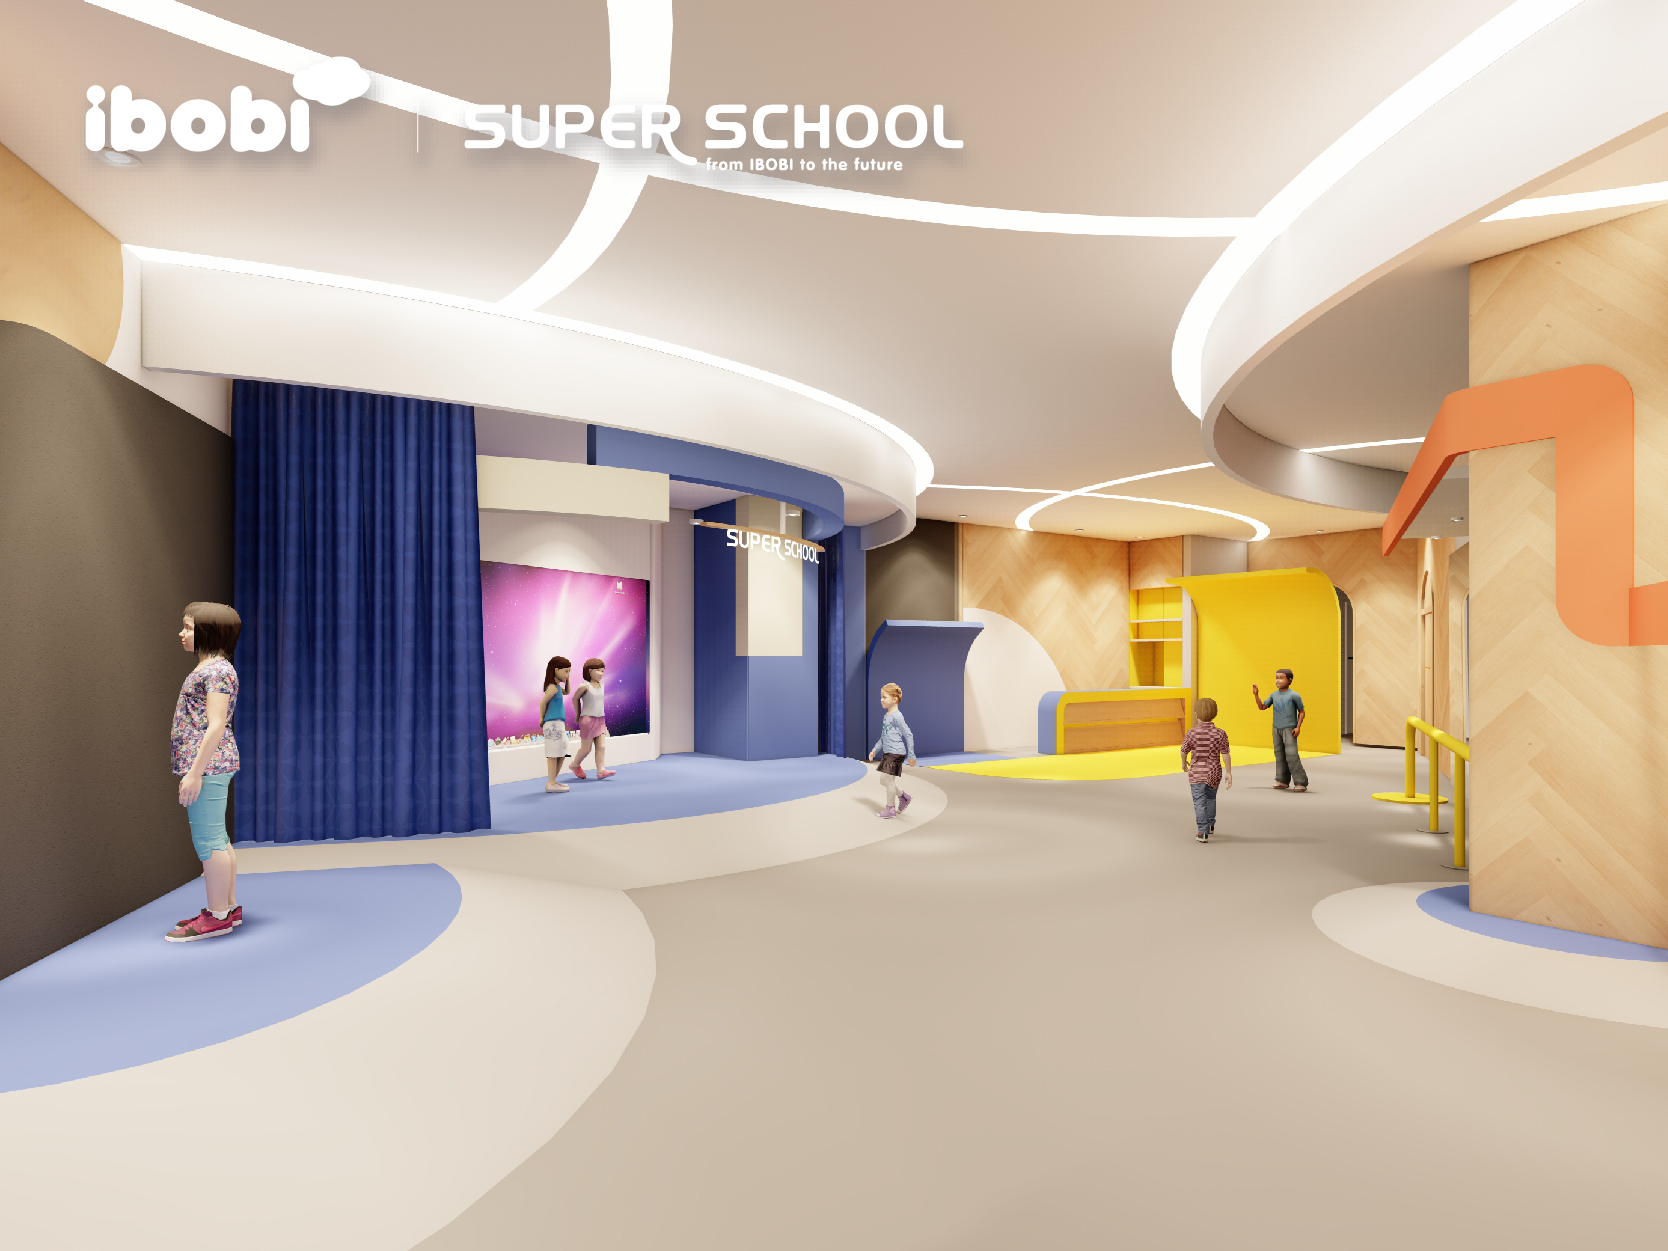 2022年02月20日IBOBI SUPER SCHOOL校园开放日免费预约